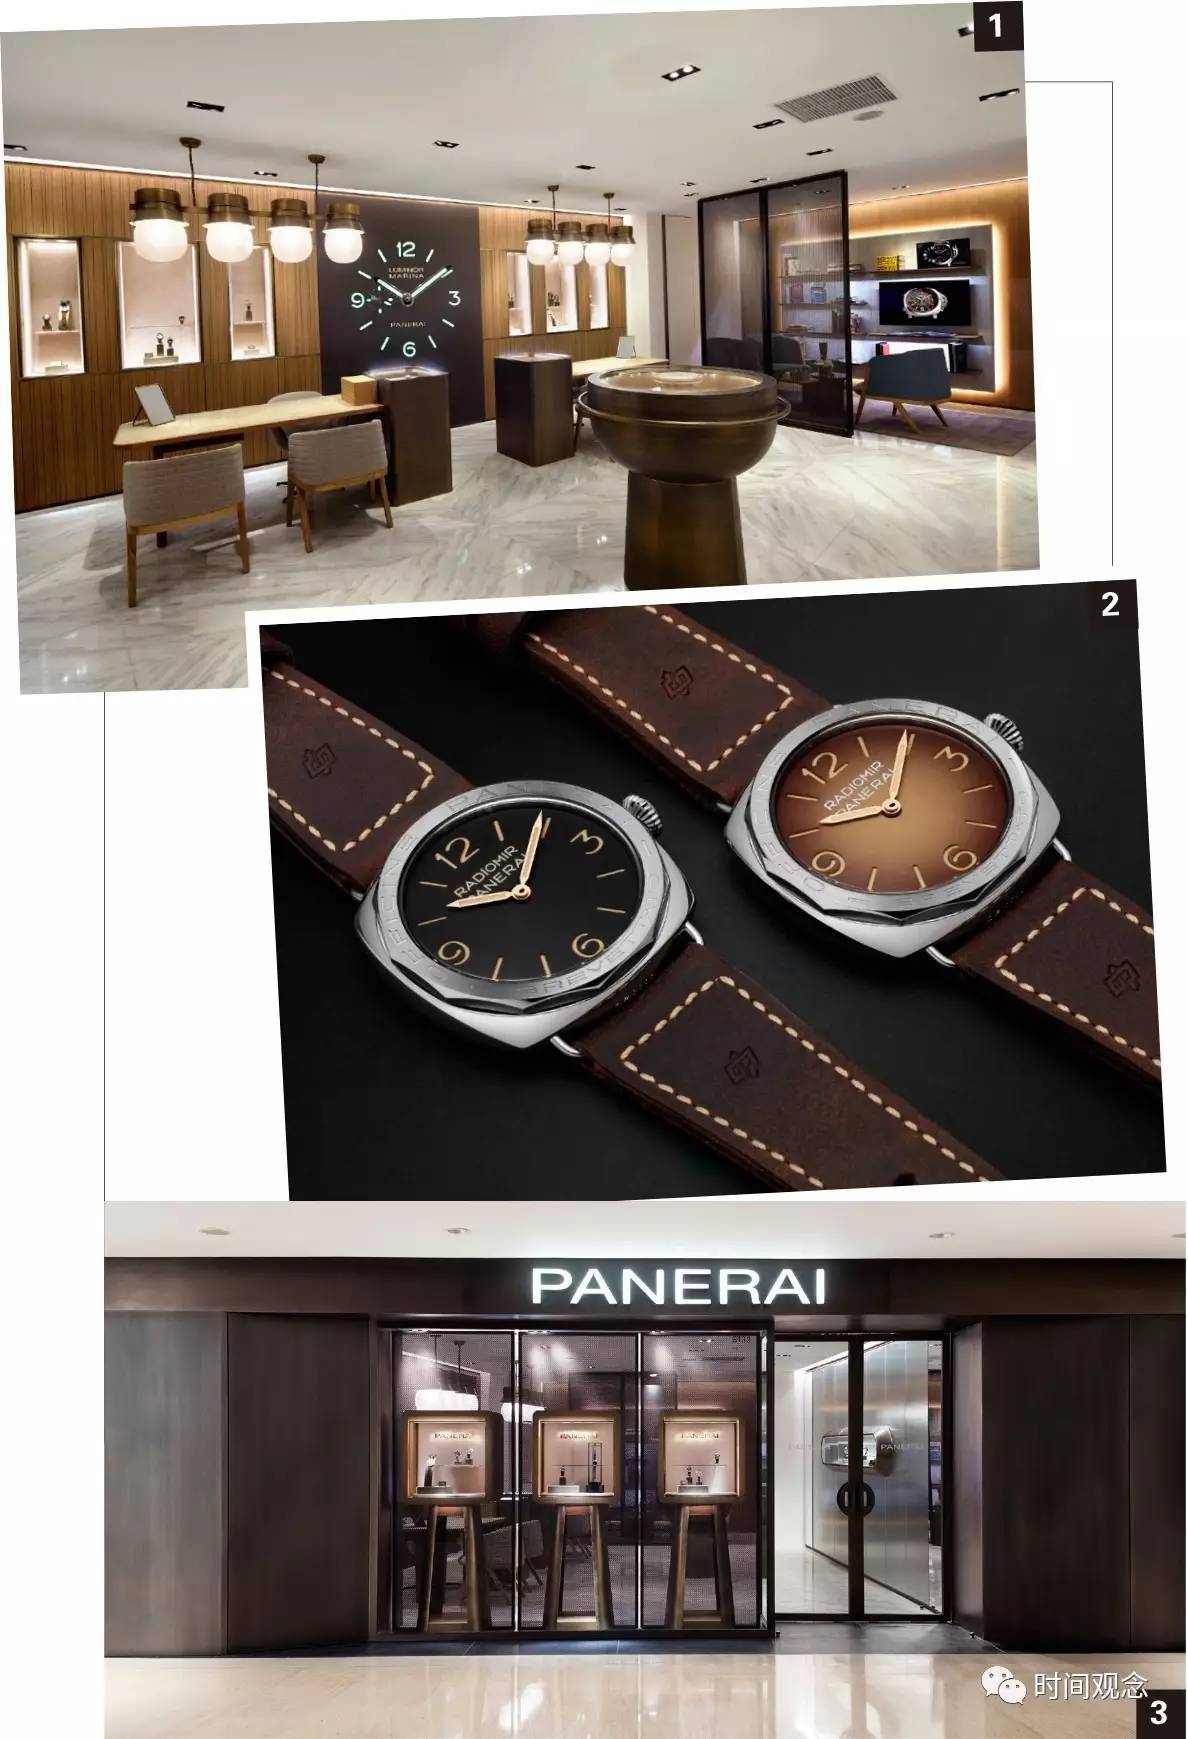 2、沛纳海中国直营店：沛纳海手表在中国有名吗？别人送的，想卖掉。